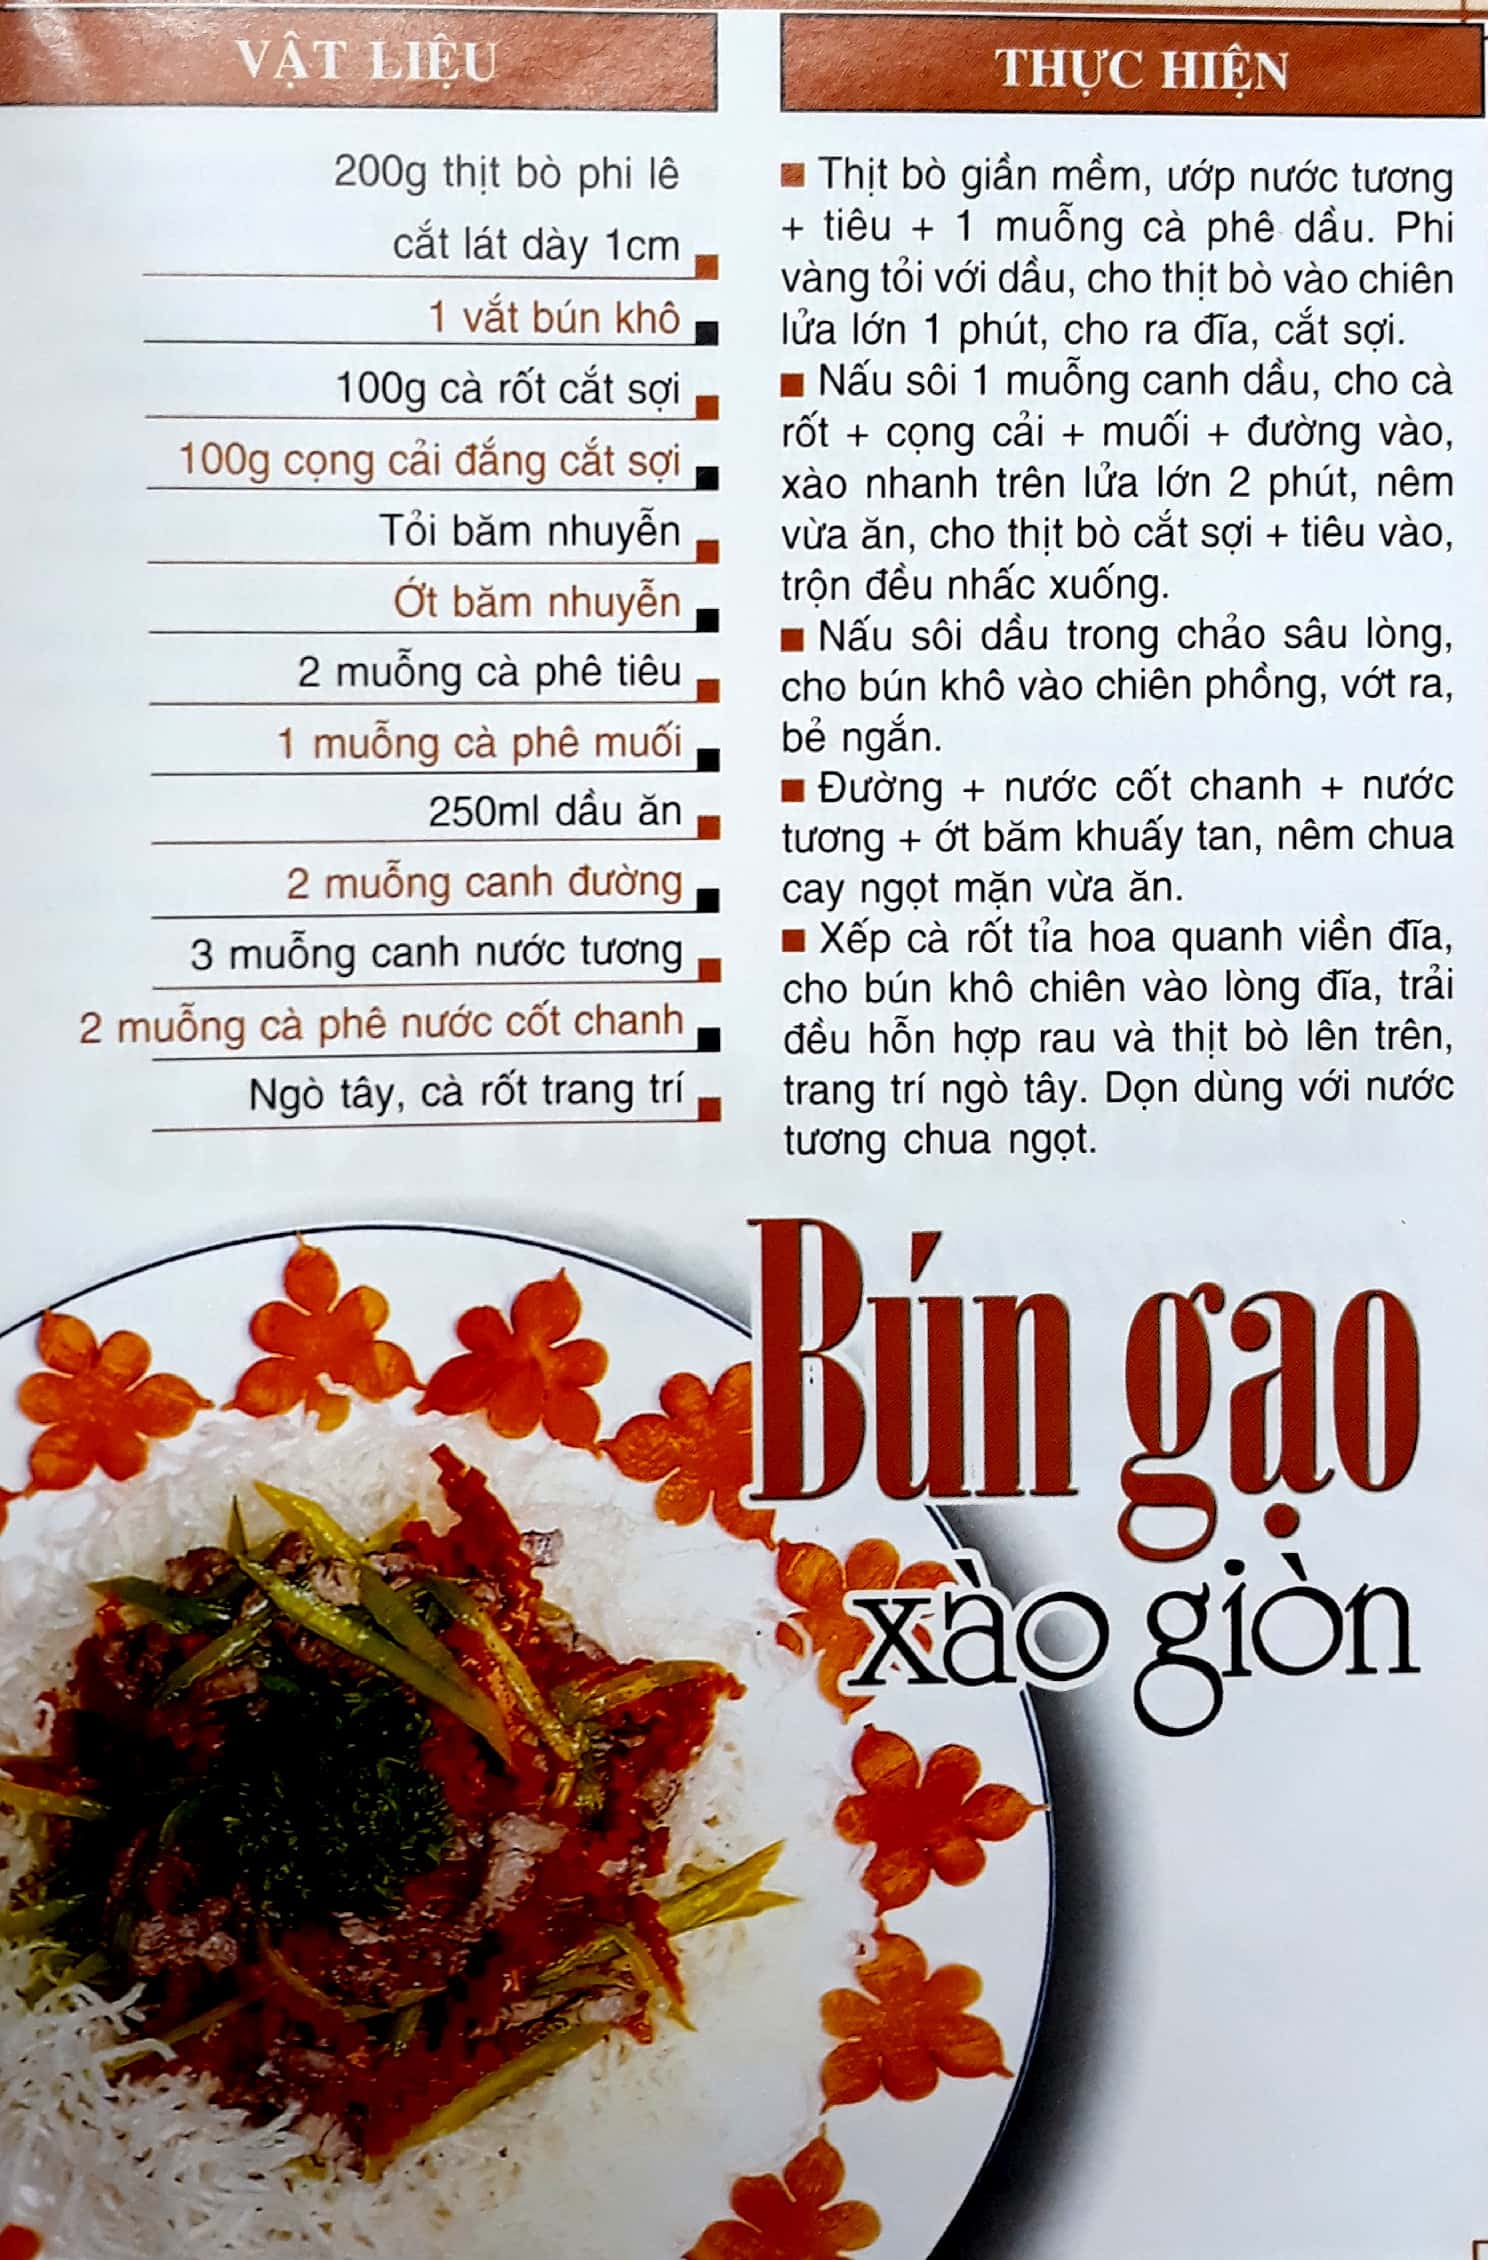 60 Món Ăn Được Ưa Thích - Bún, Mì, Cháo, Lẩu PDF